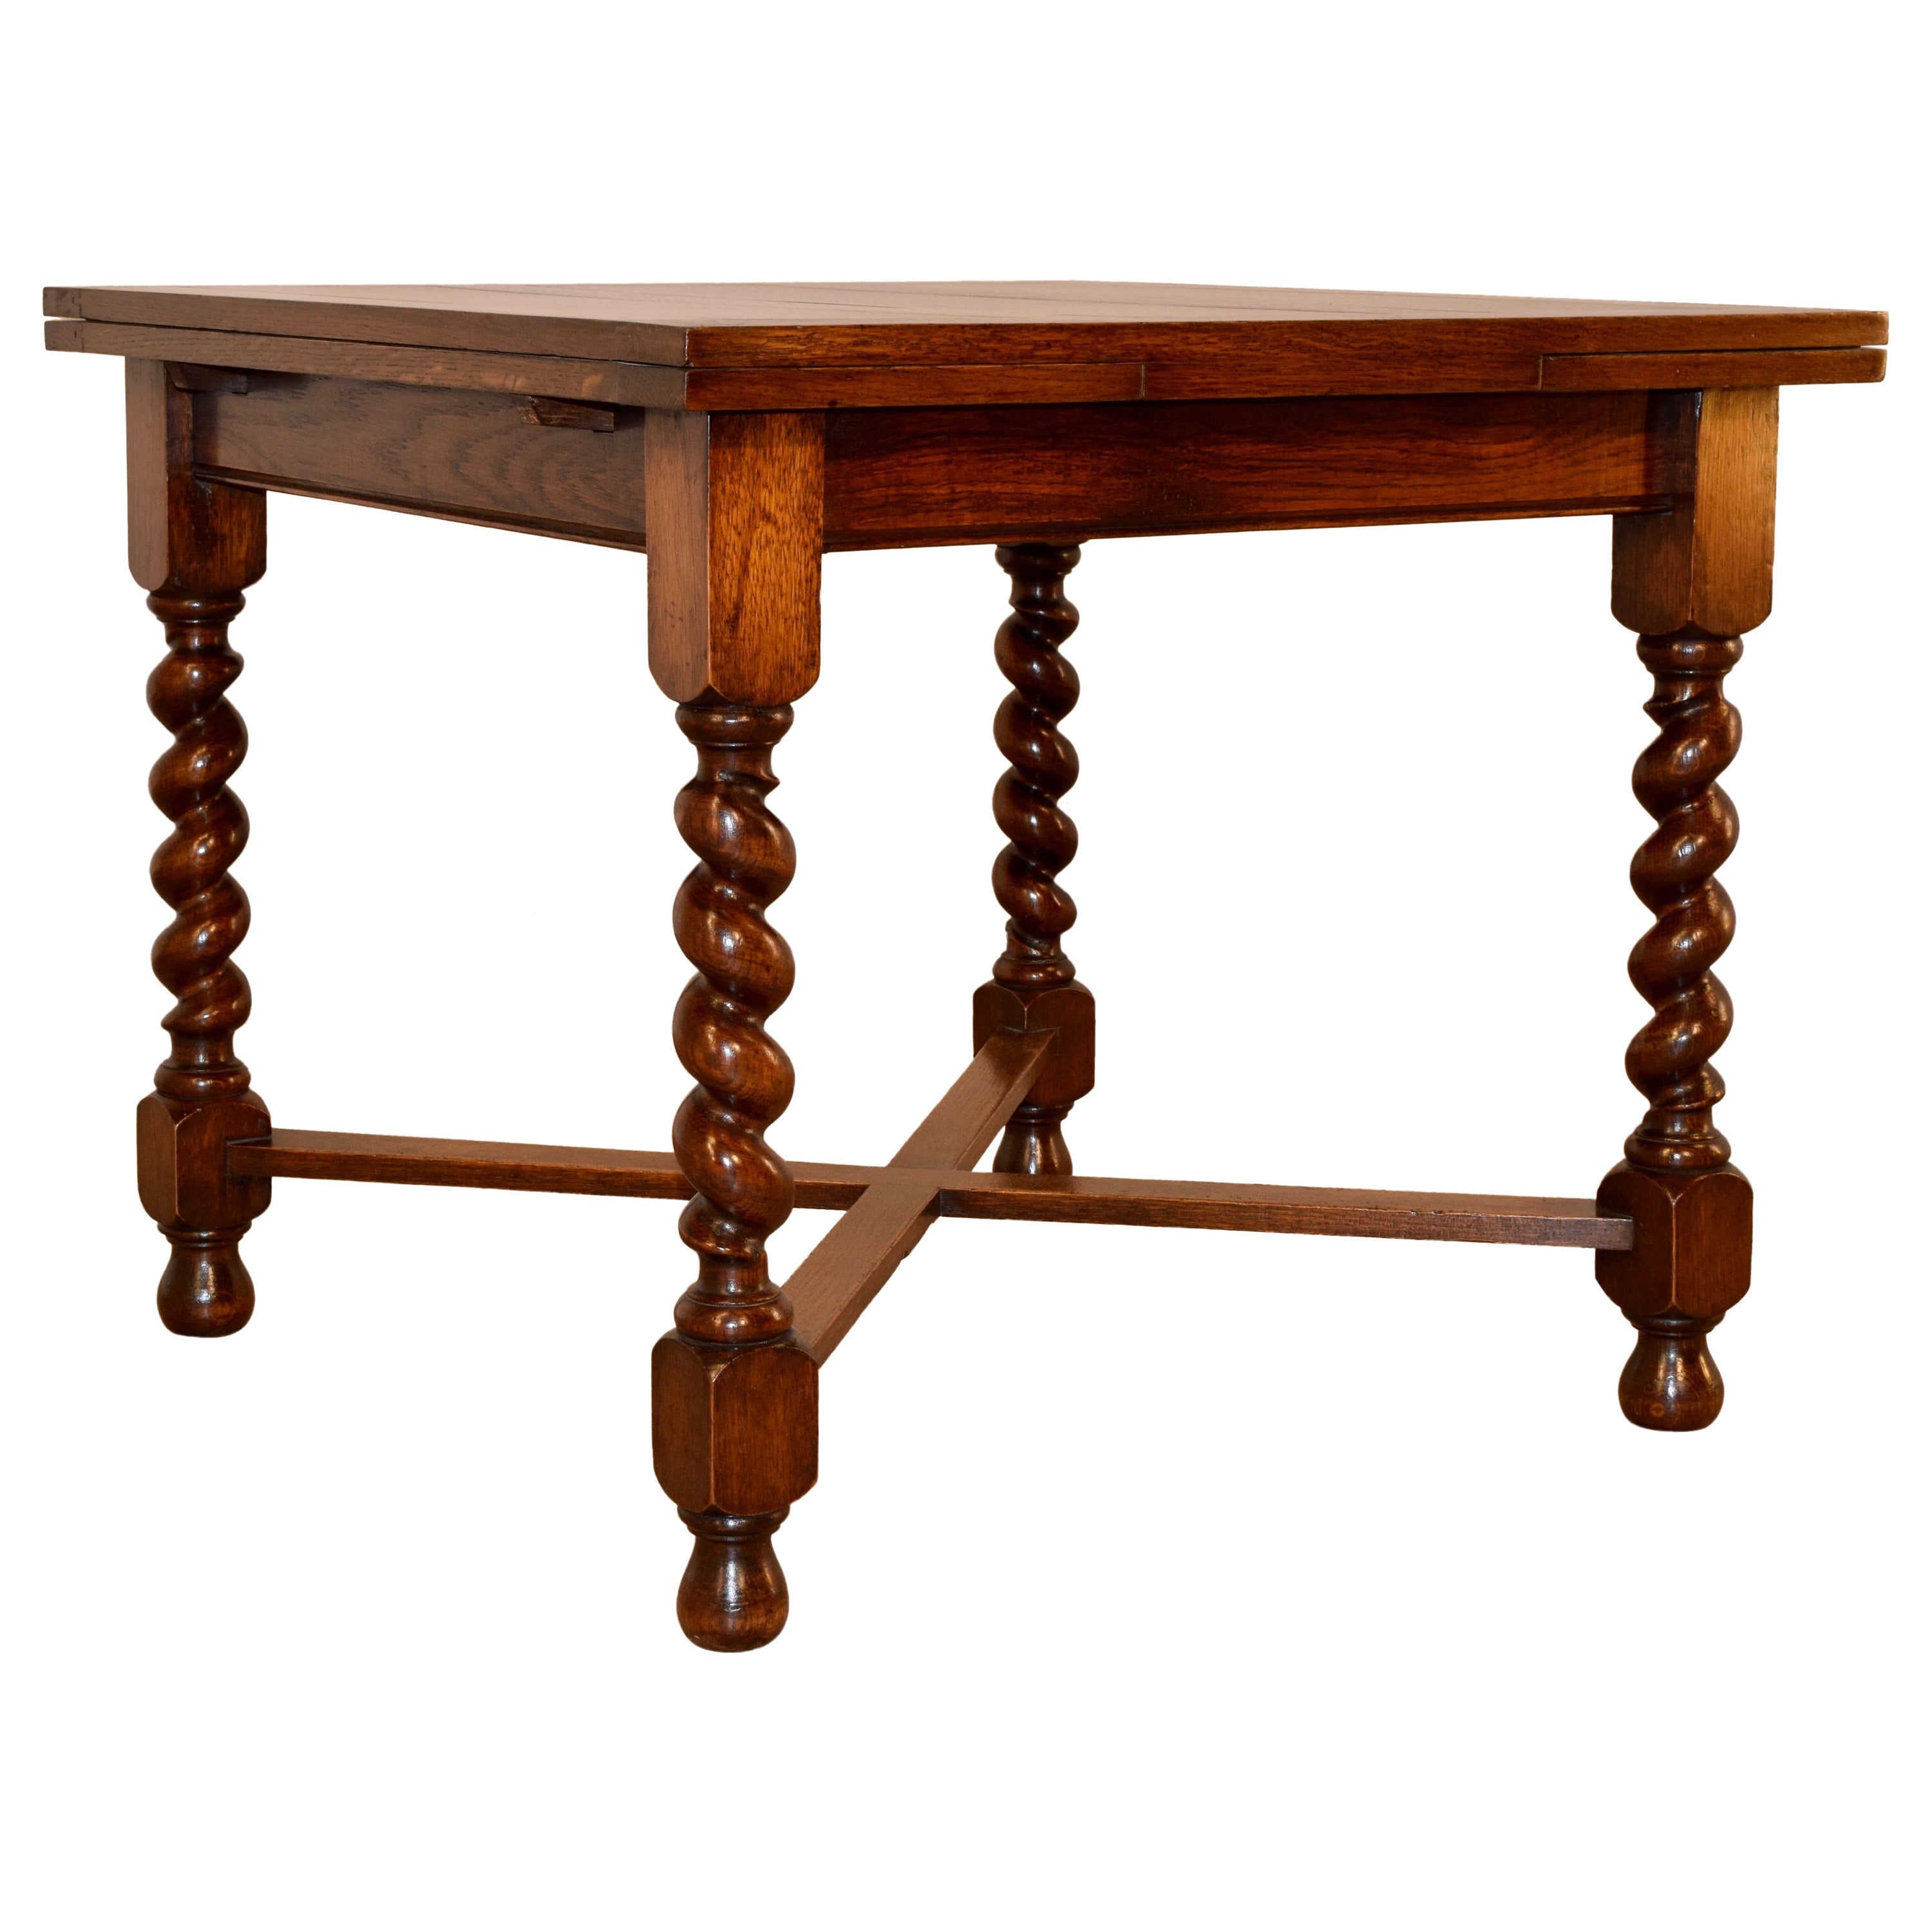 English Oak Drawleaf Table, circa 1900